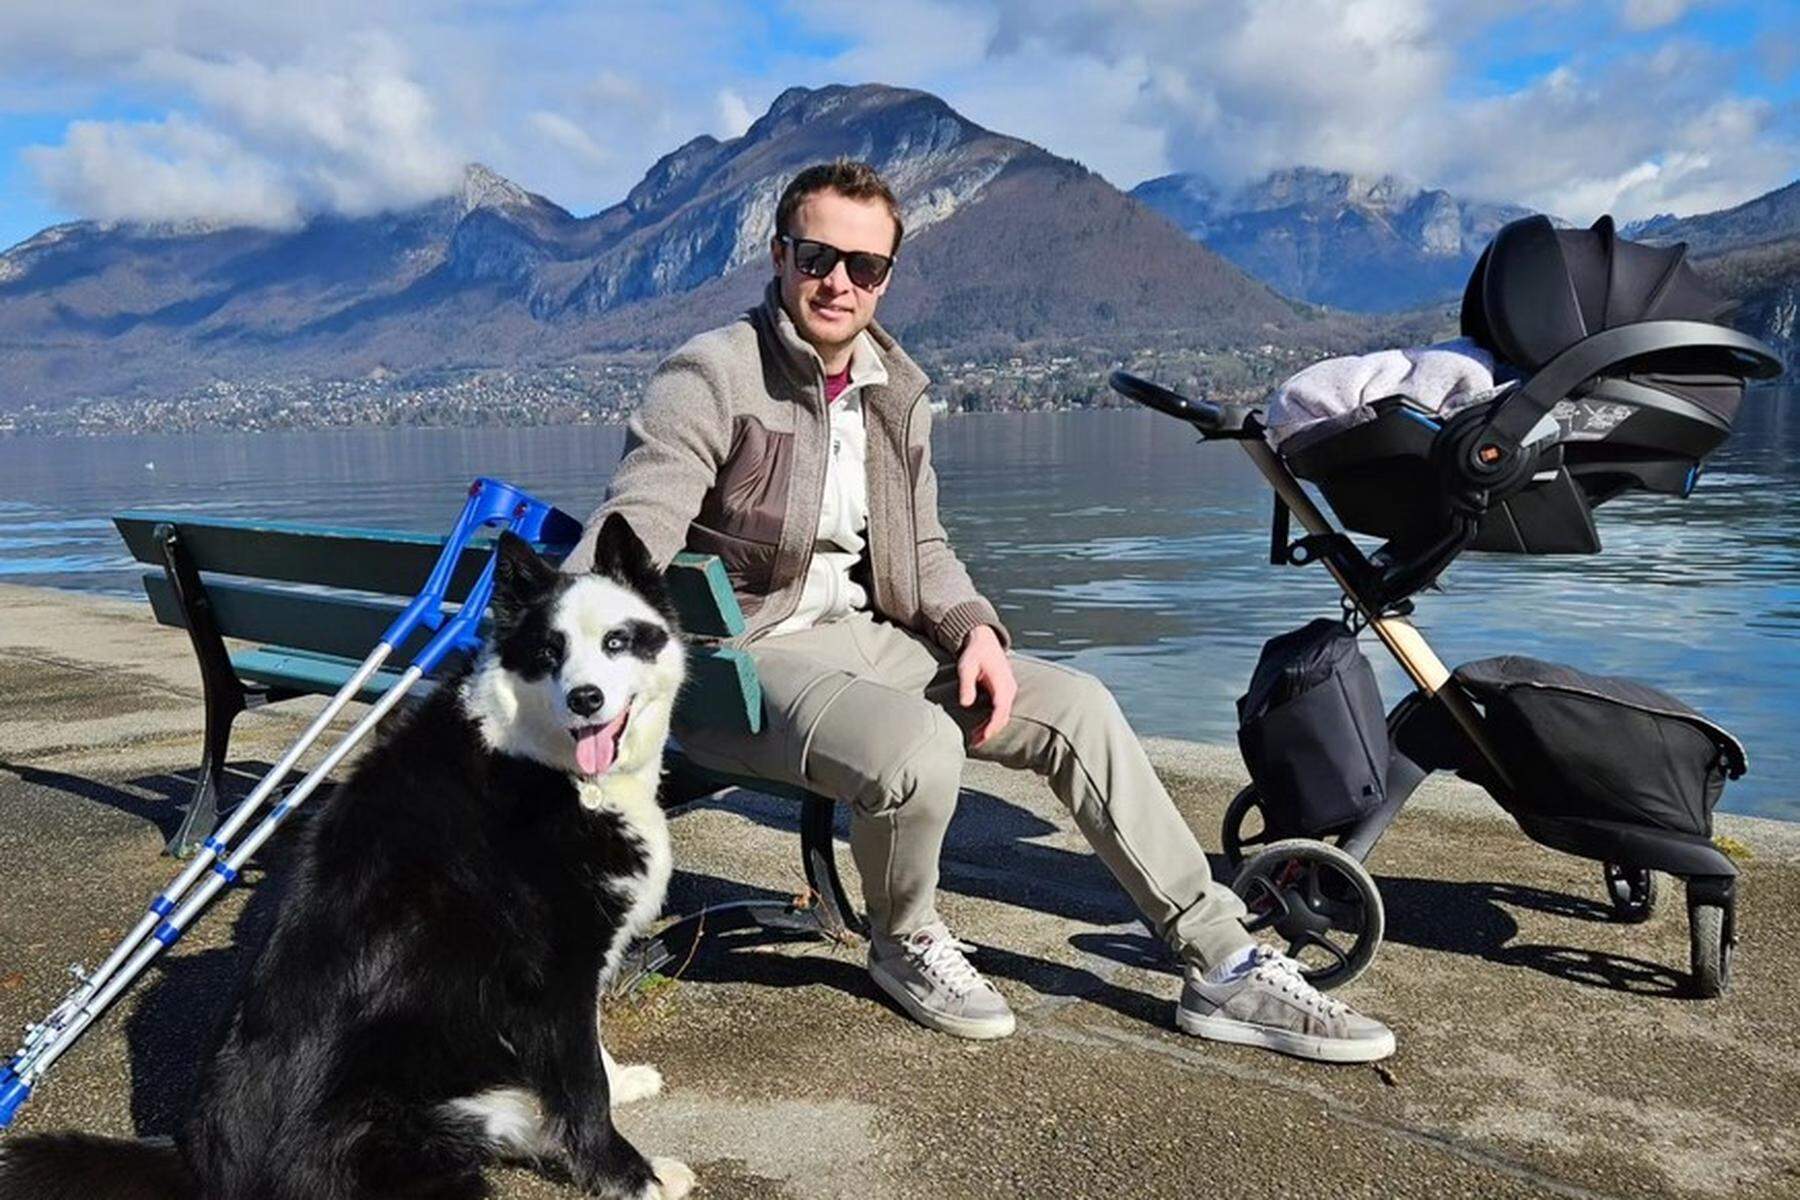 Verletzter Ski-Star: Alexis Pinturault genießt „komischen“ Winter mit Familie und Hund